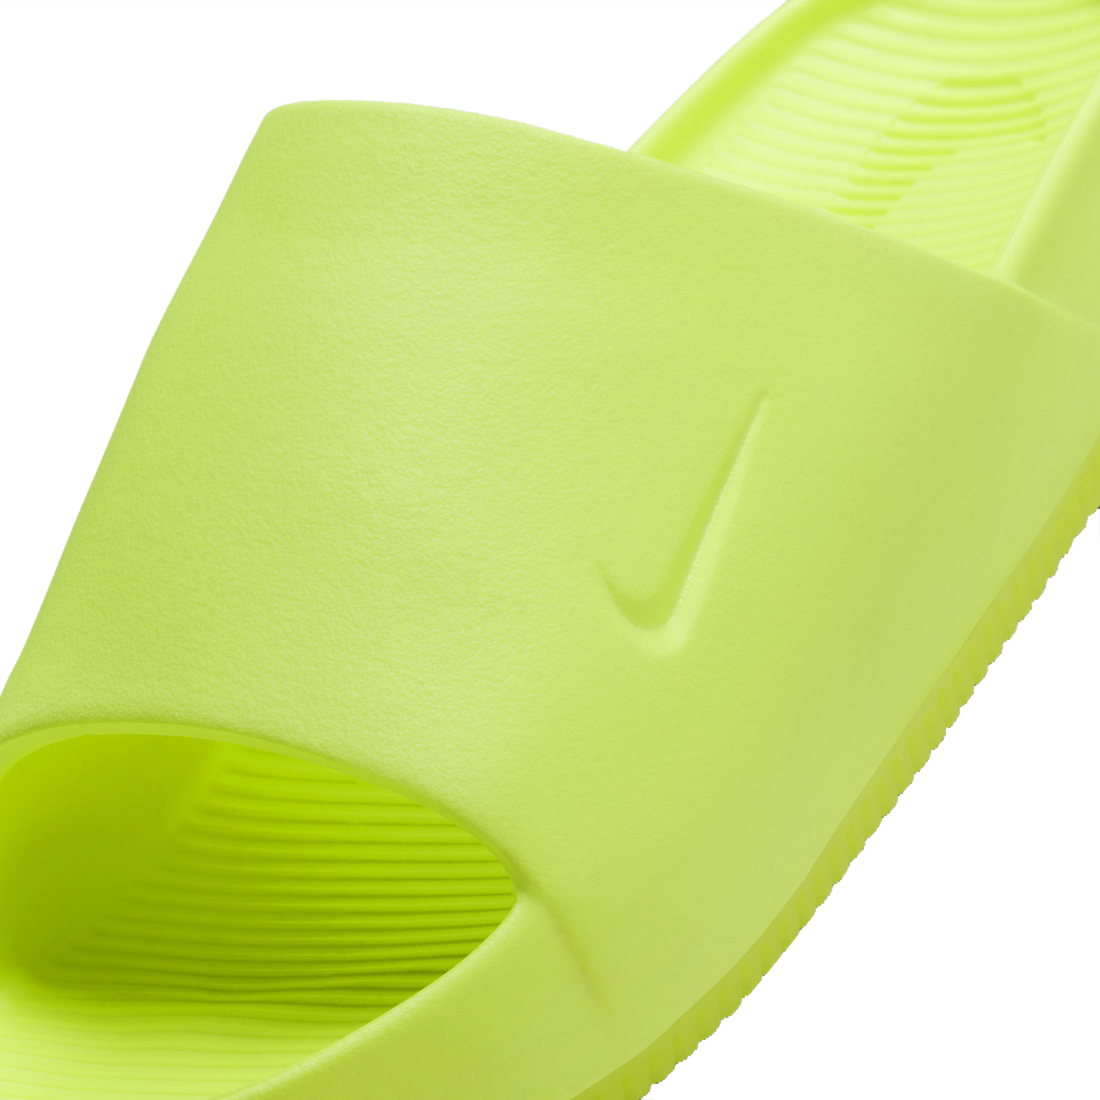 Nike Calm Slide Volt FD4116-700 - KicksOnFire.com